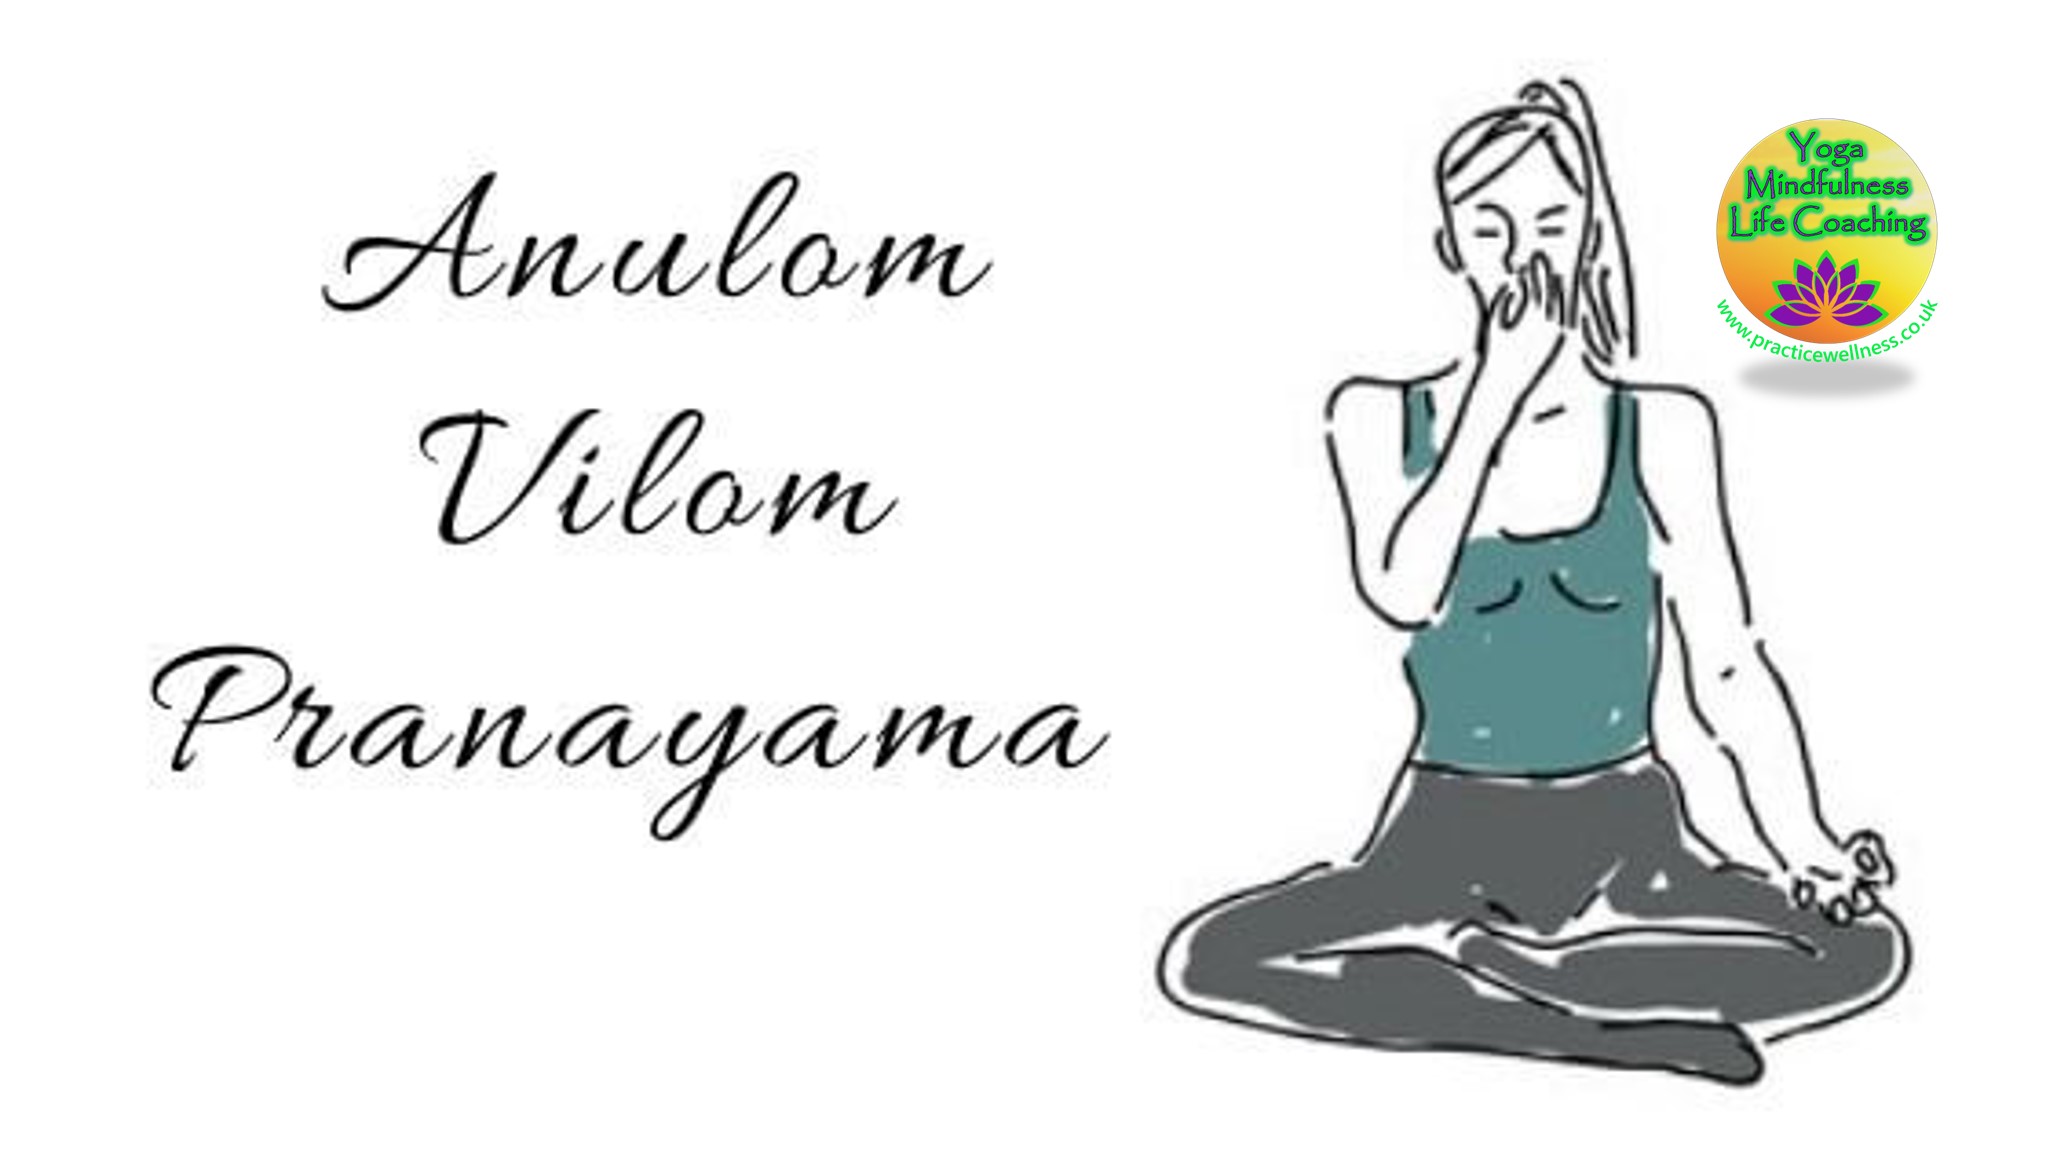 Practice Wellness Pranayama Anulom Vilom